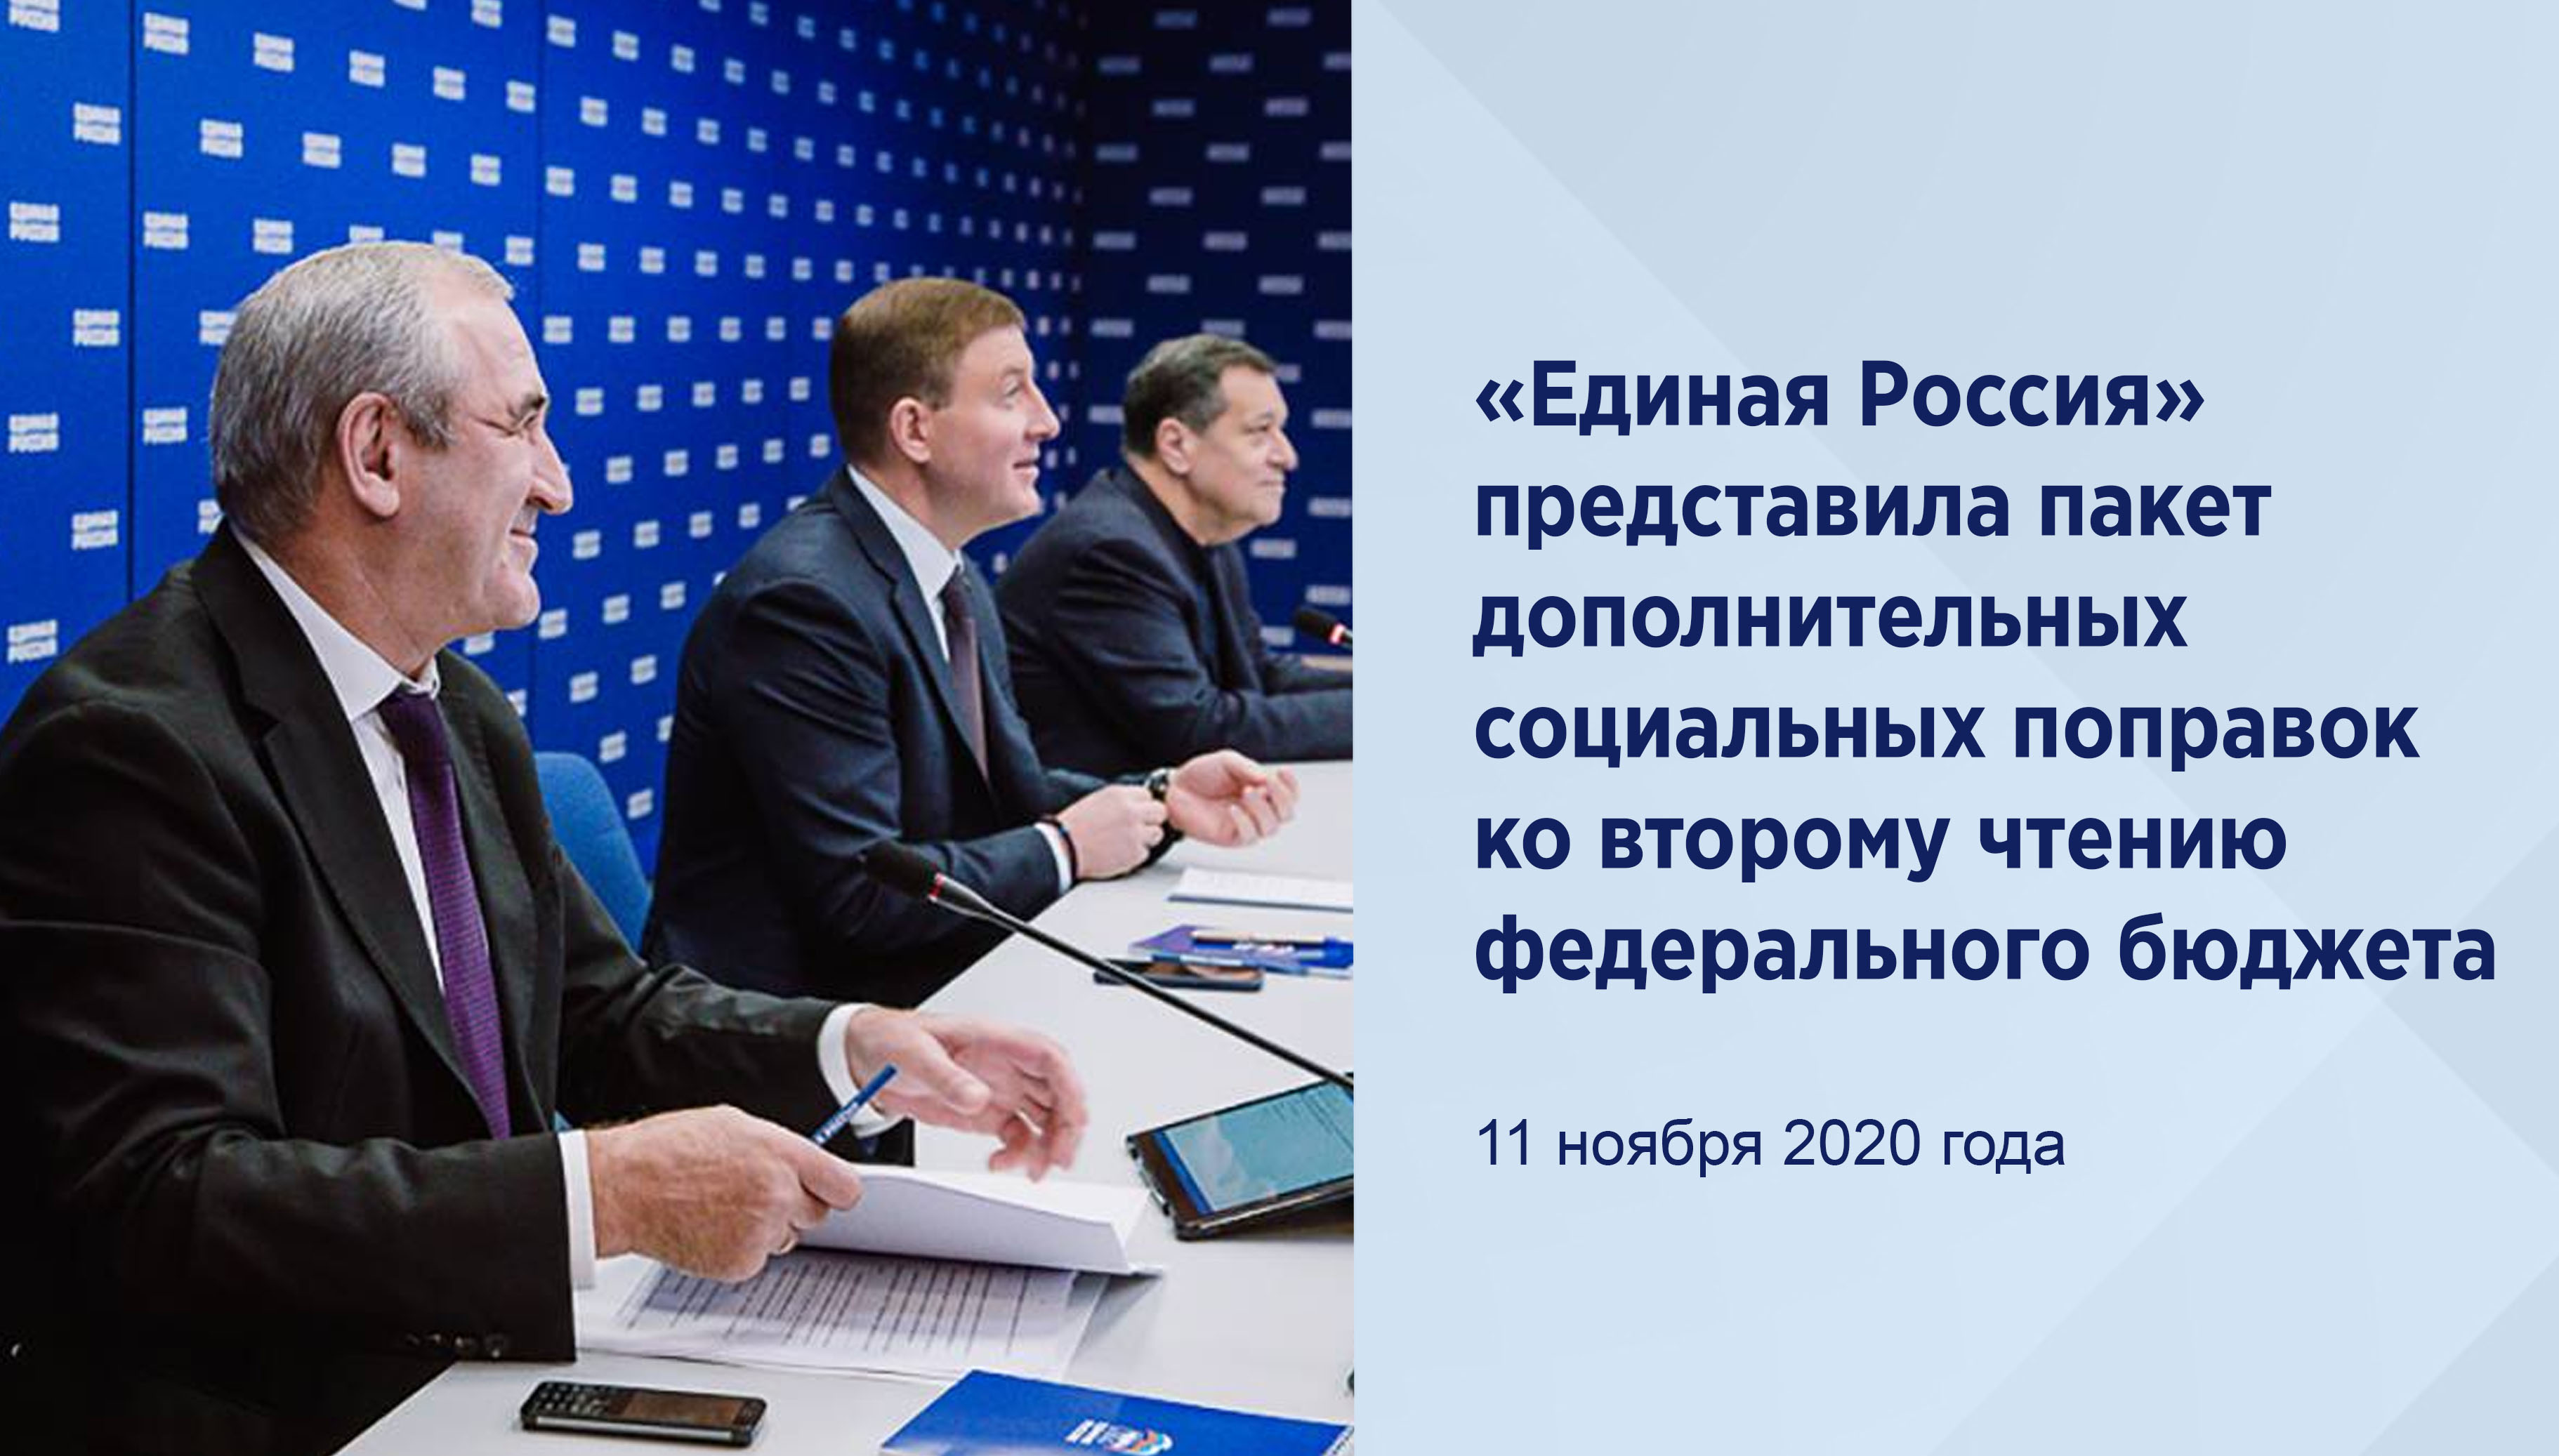 «Единая Россия» представила
пакет дополнительных социальных
поправок ко второму чтению
федерального бюджета